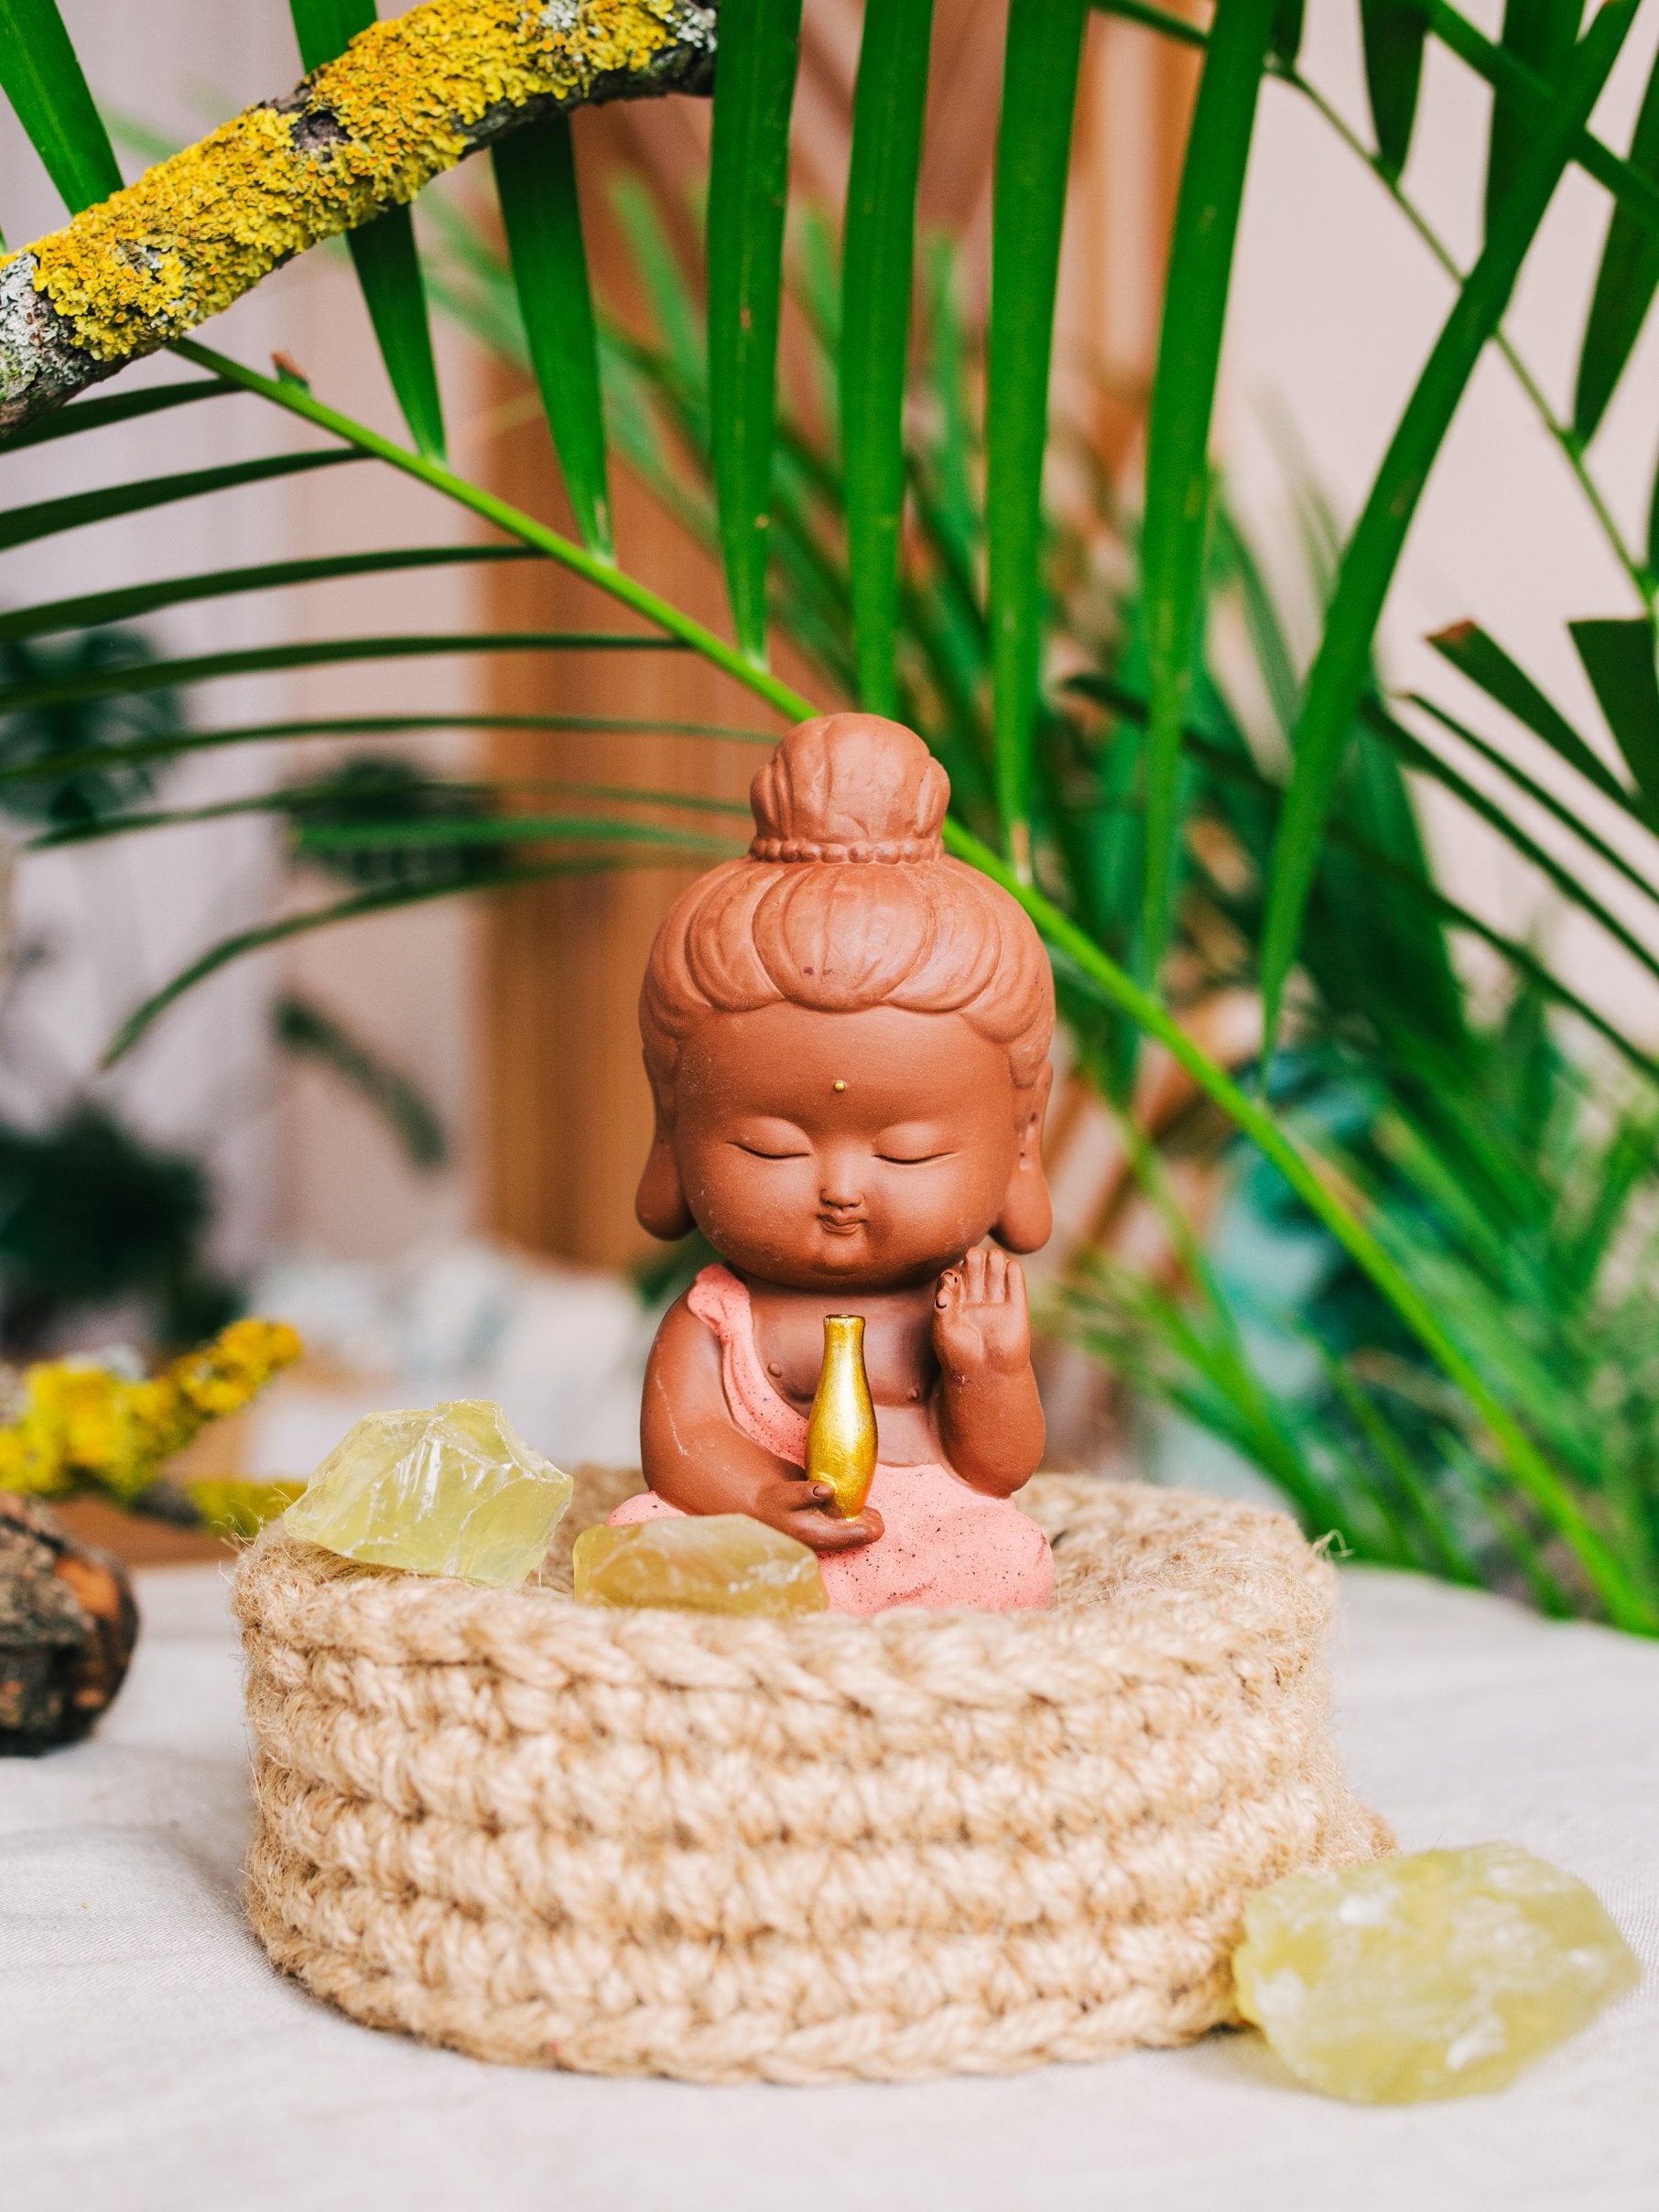 Wellness Buddha Figurine